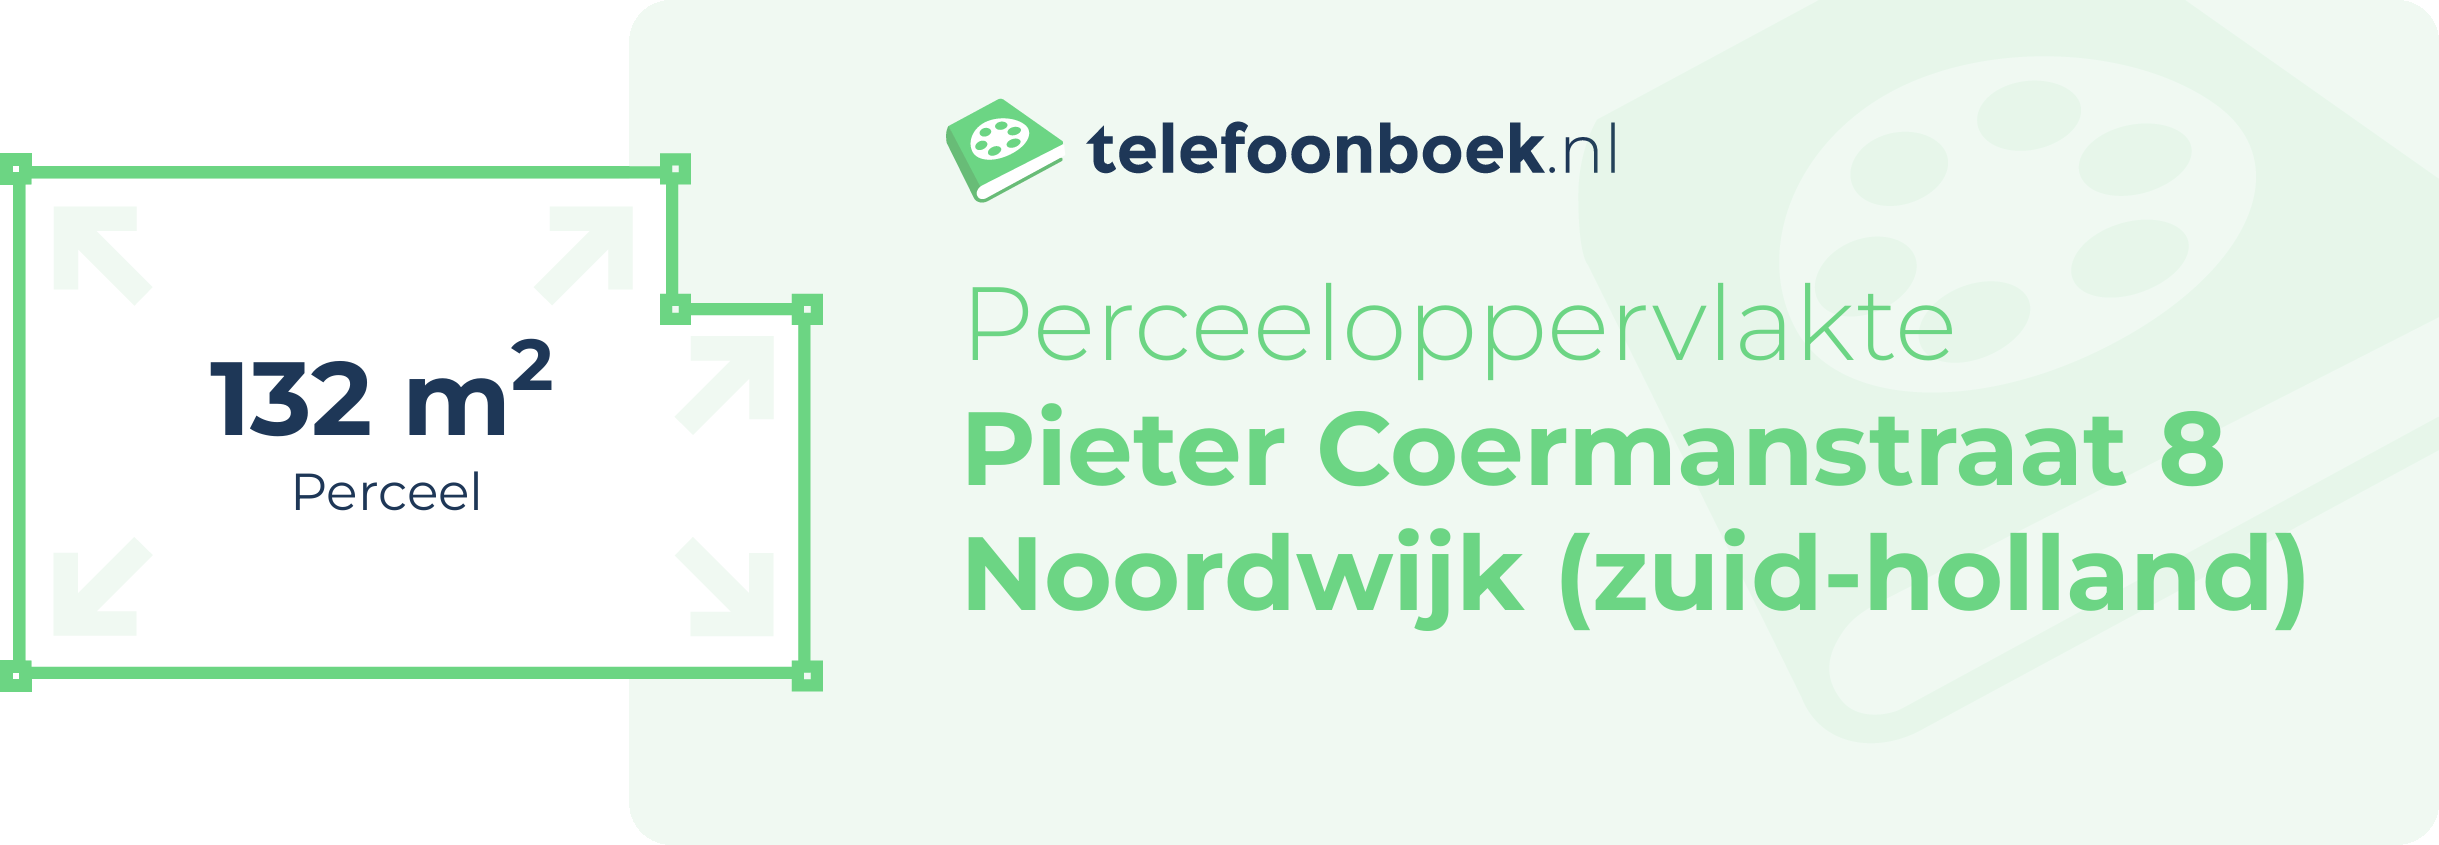 Perceeloppervlakte Pieter Coermanstraat 8 Noordwijk (Zuid-Holland)